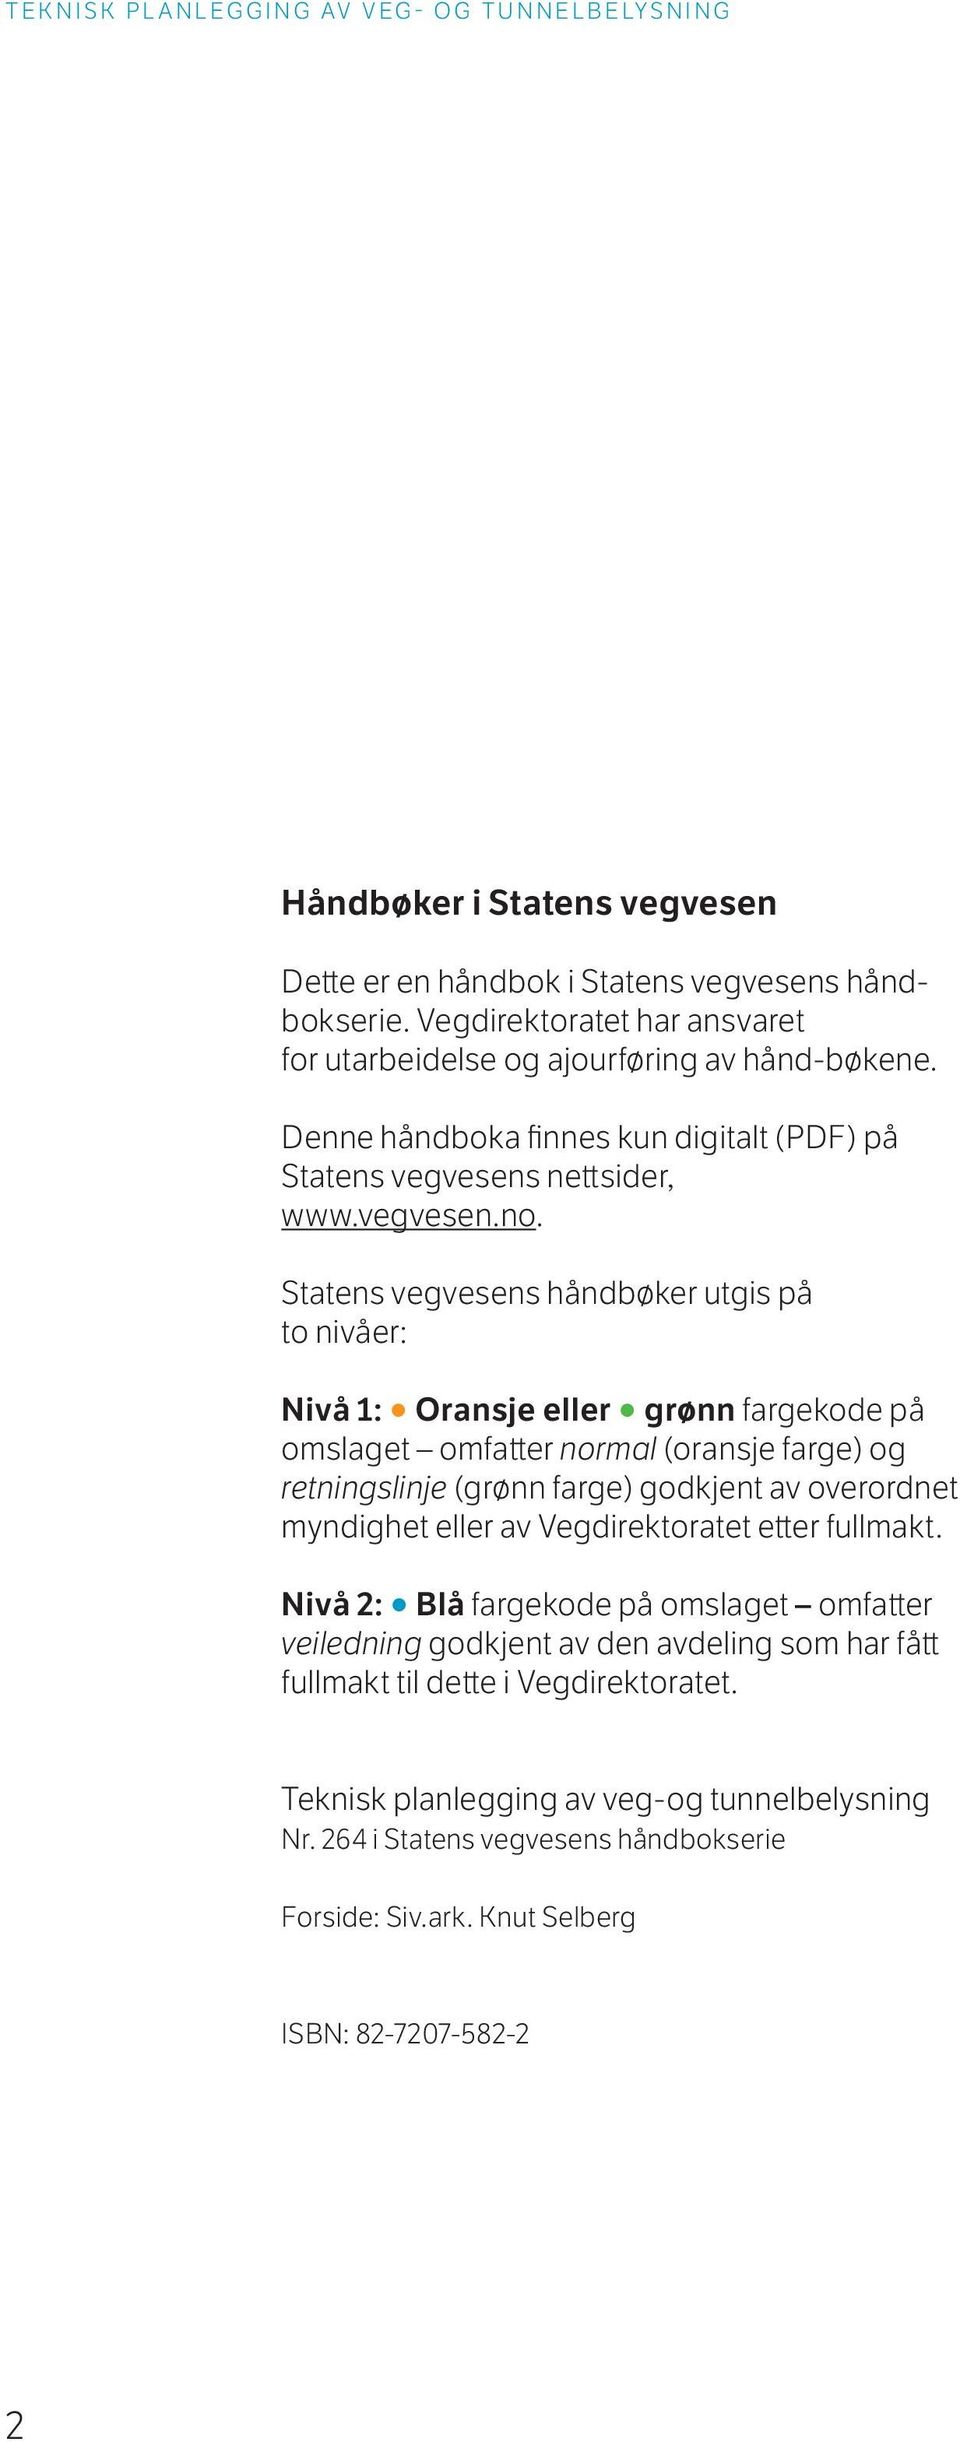 Statens vegvesens håndbøker utgis på to nivåer: Nivå 1: Oransje eller grønn fargekode på omslaget omfatter normal (oransje farge) og retningslinje (grønn farge) godkjent av overordnet myndighet eller